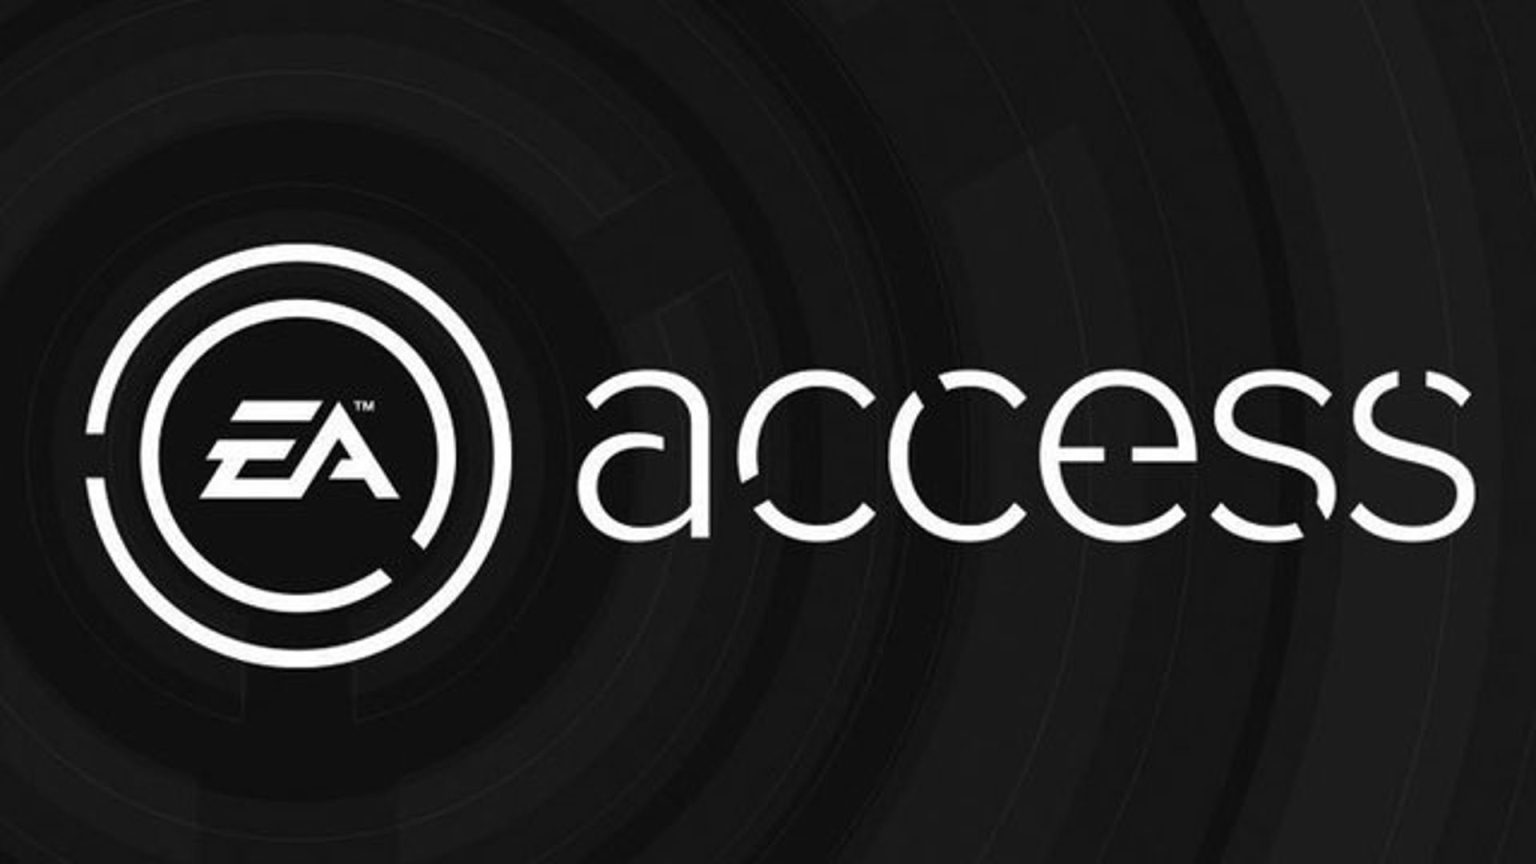 EA Access suscripciones